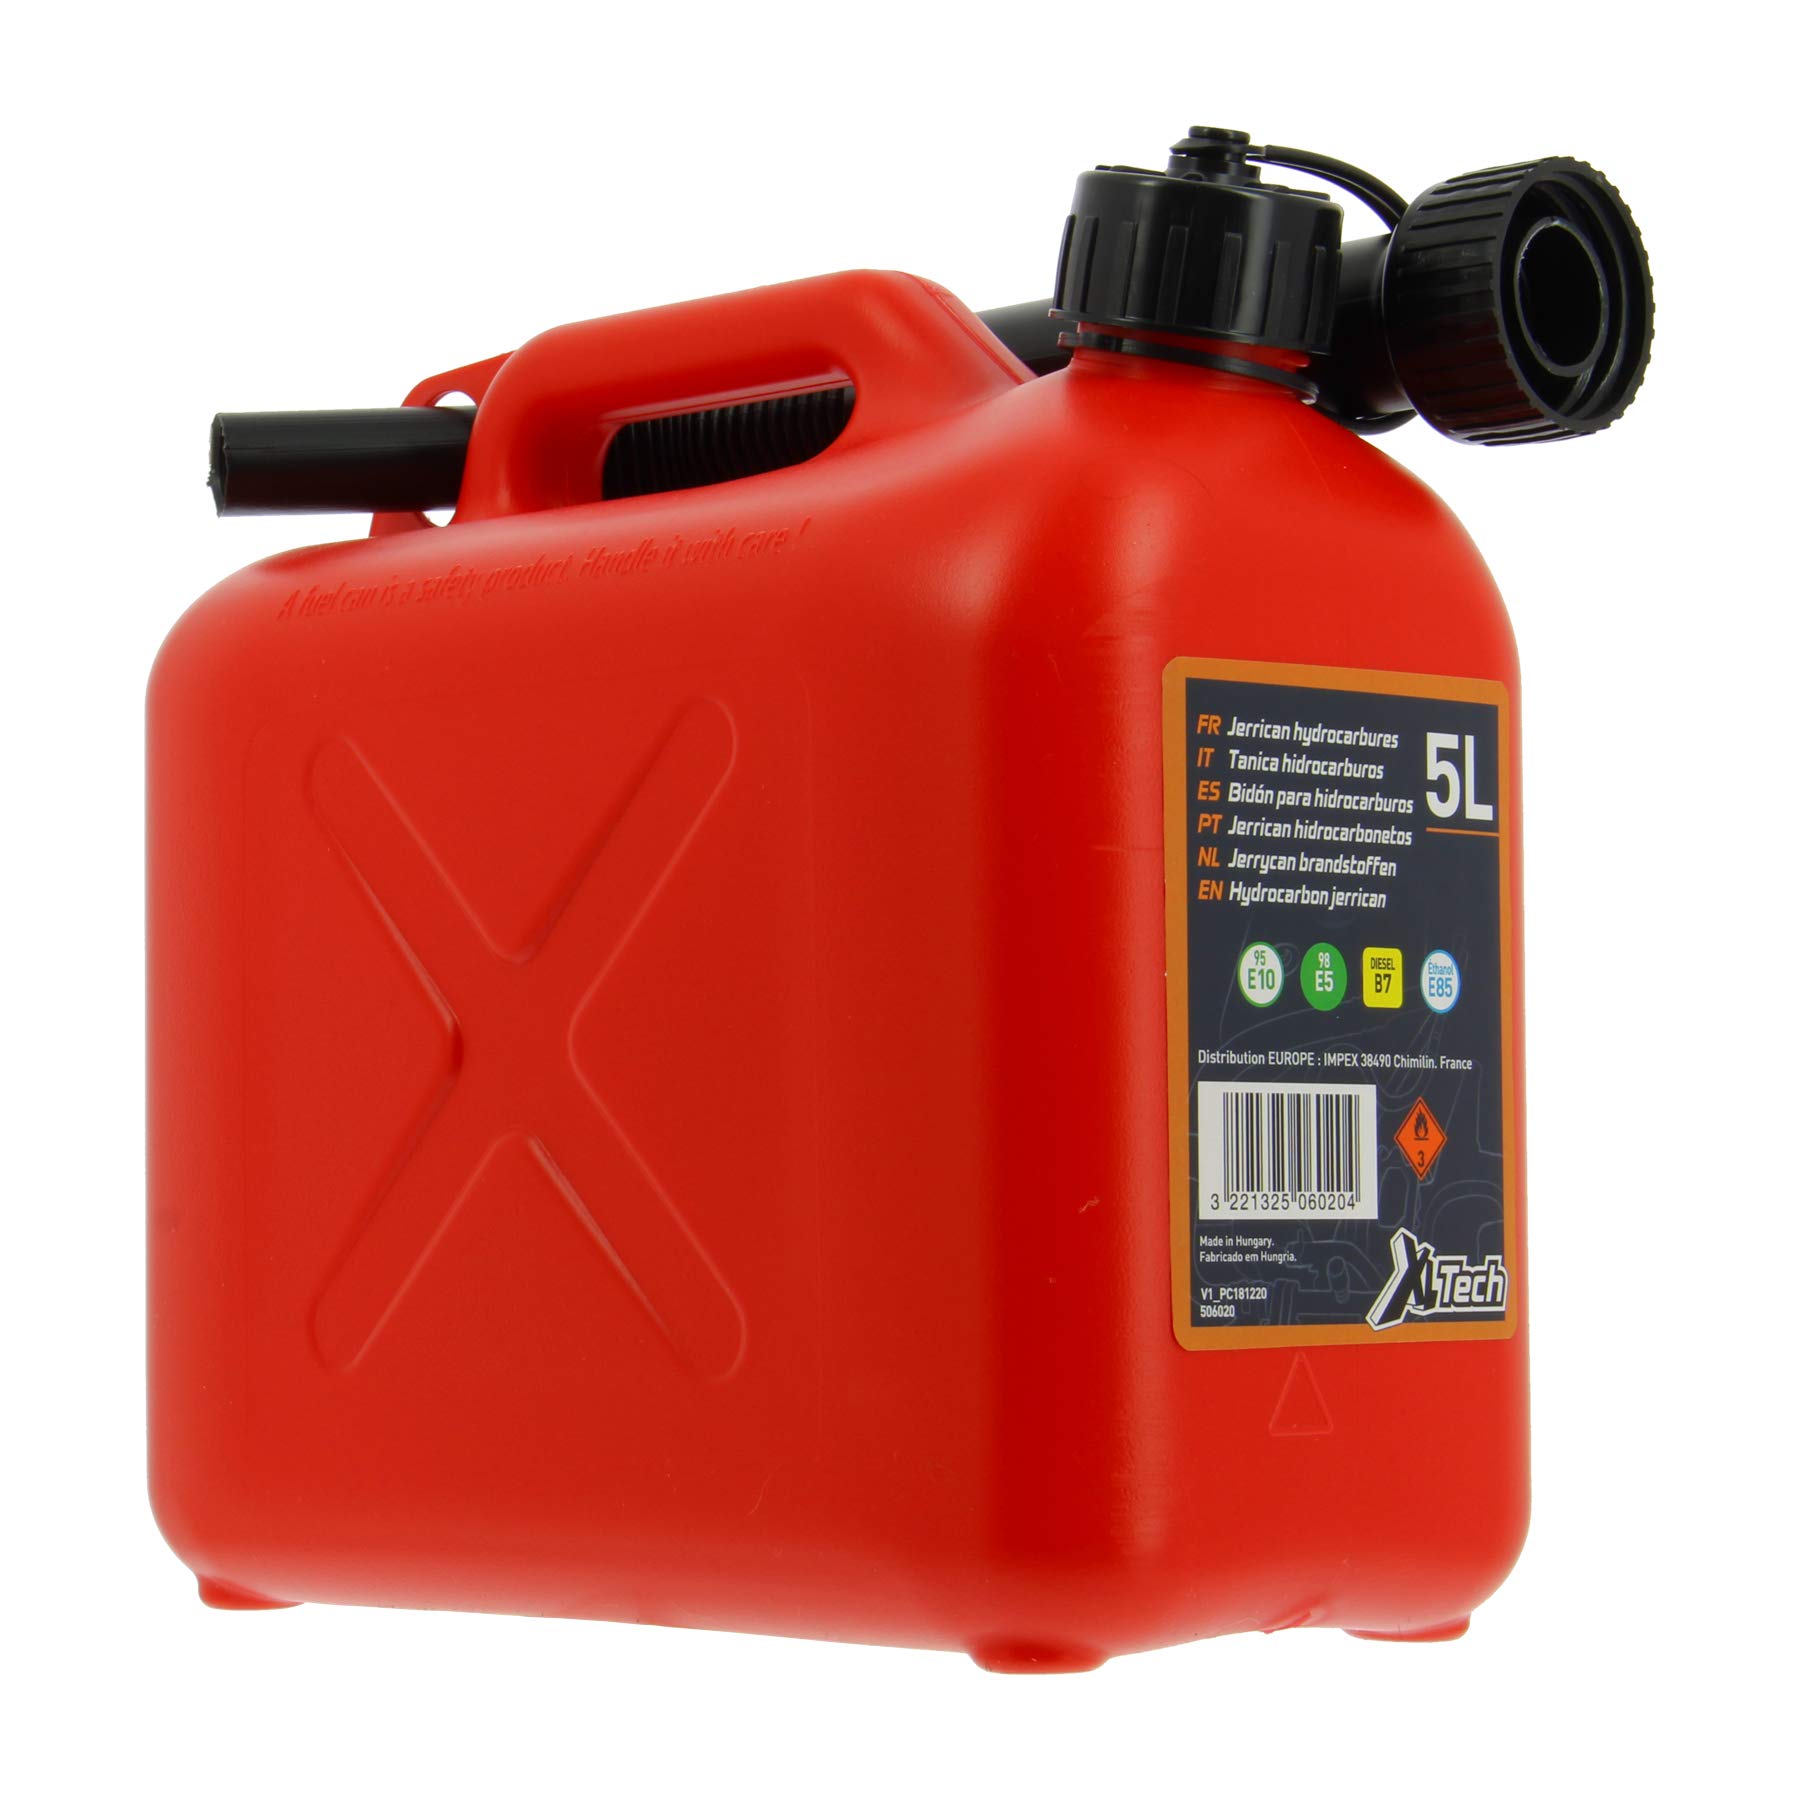 Cartec 506020 zugelassener Kanister für 5 L Kraftstoff von XLTECH